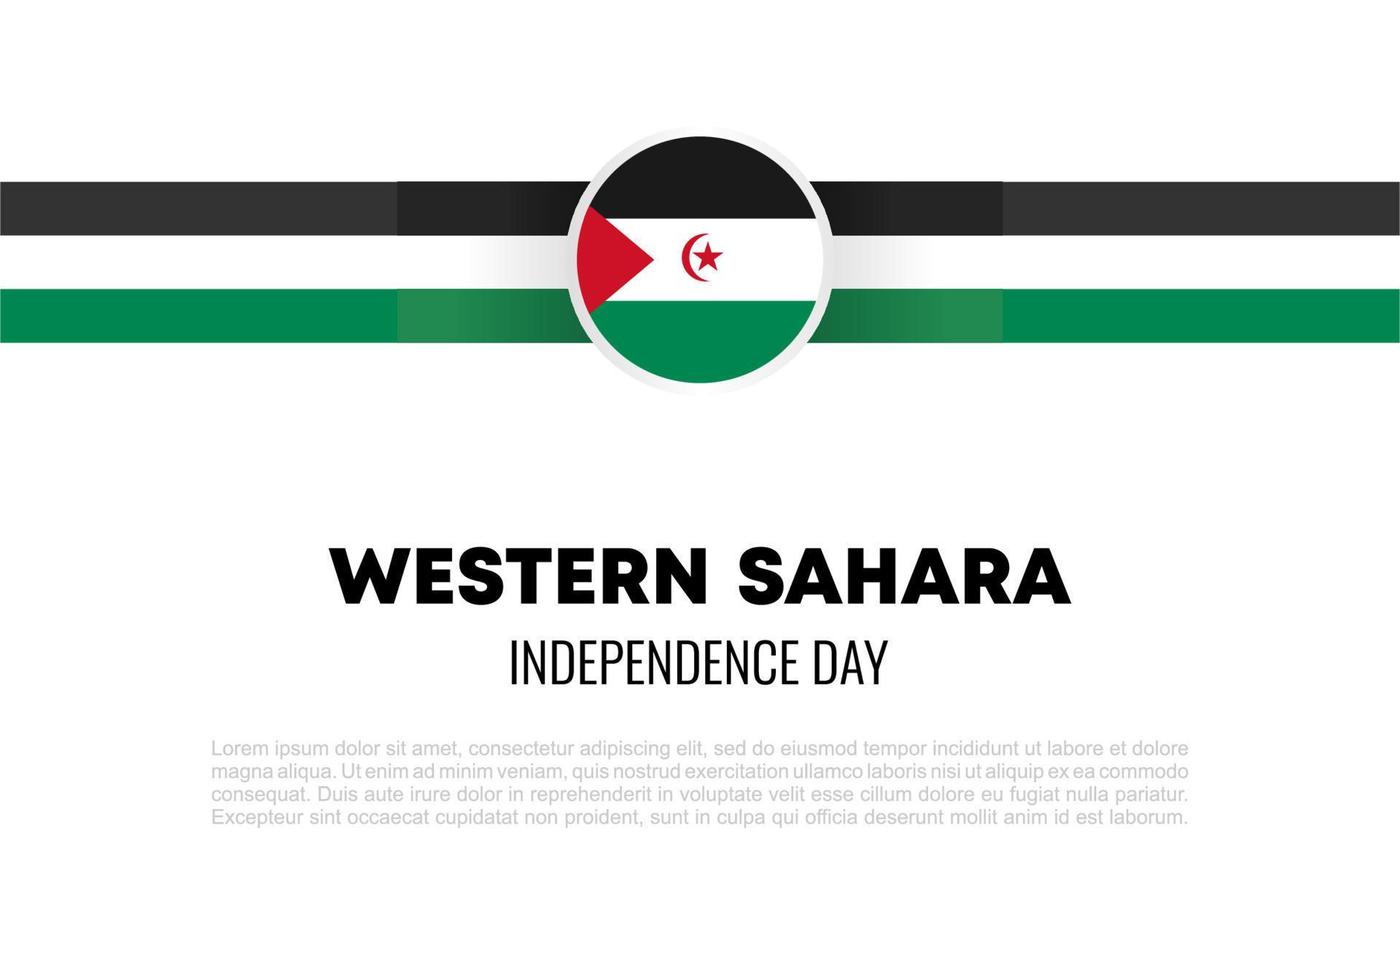 dia da independência do Saara Ocidental para celebração nacional 27 de fevereiro vetor